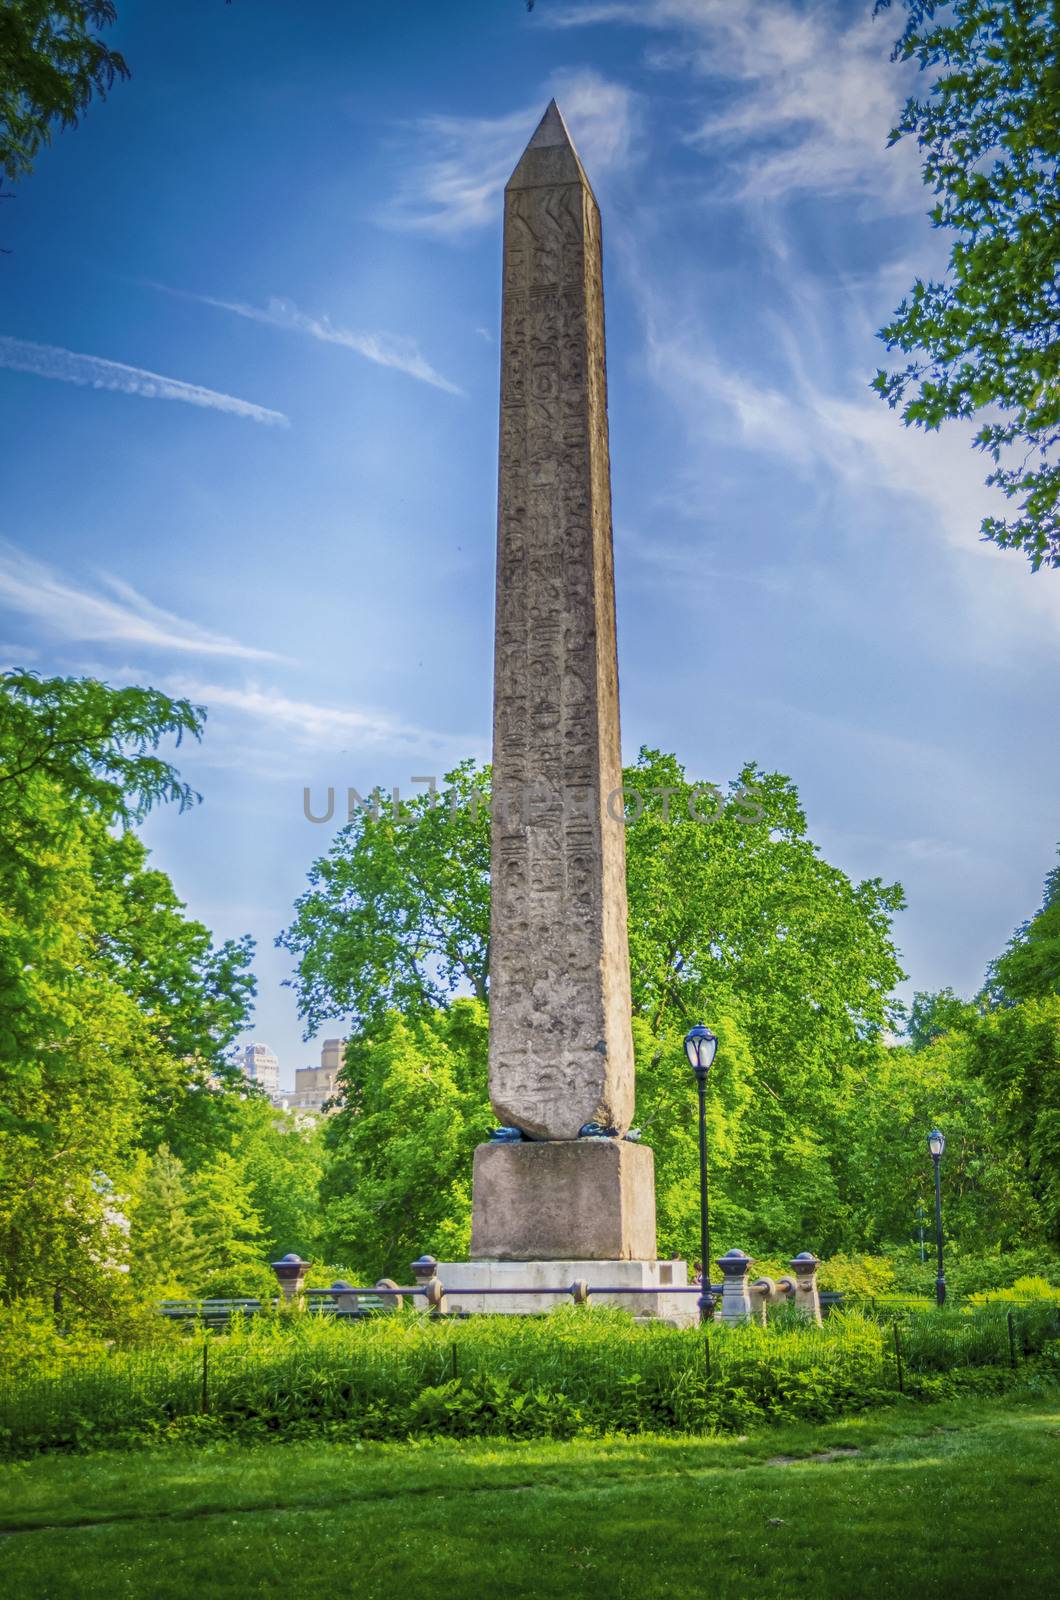 Obelisk in Central Park, New York by marcorubino